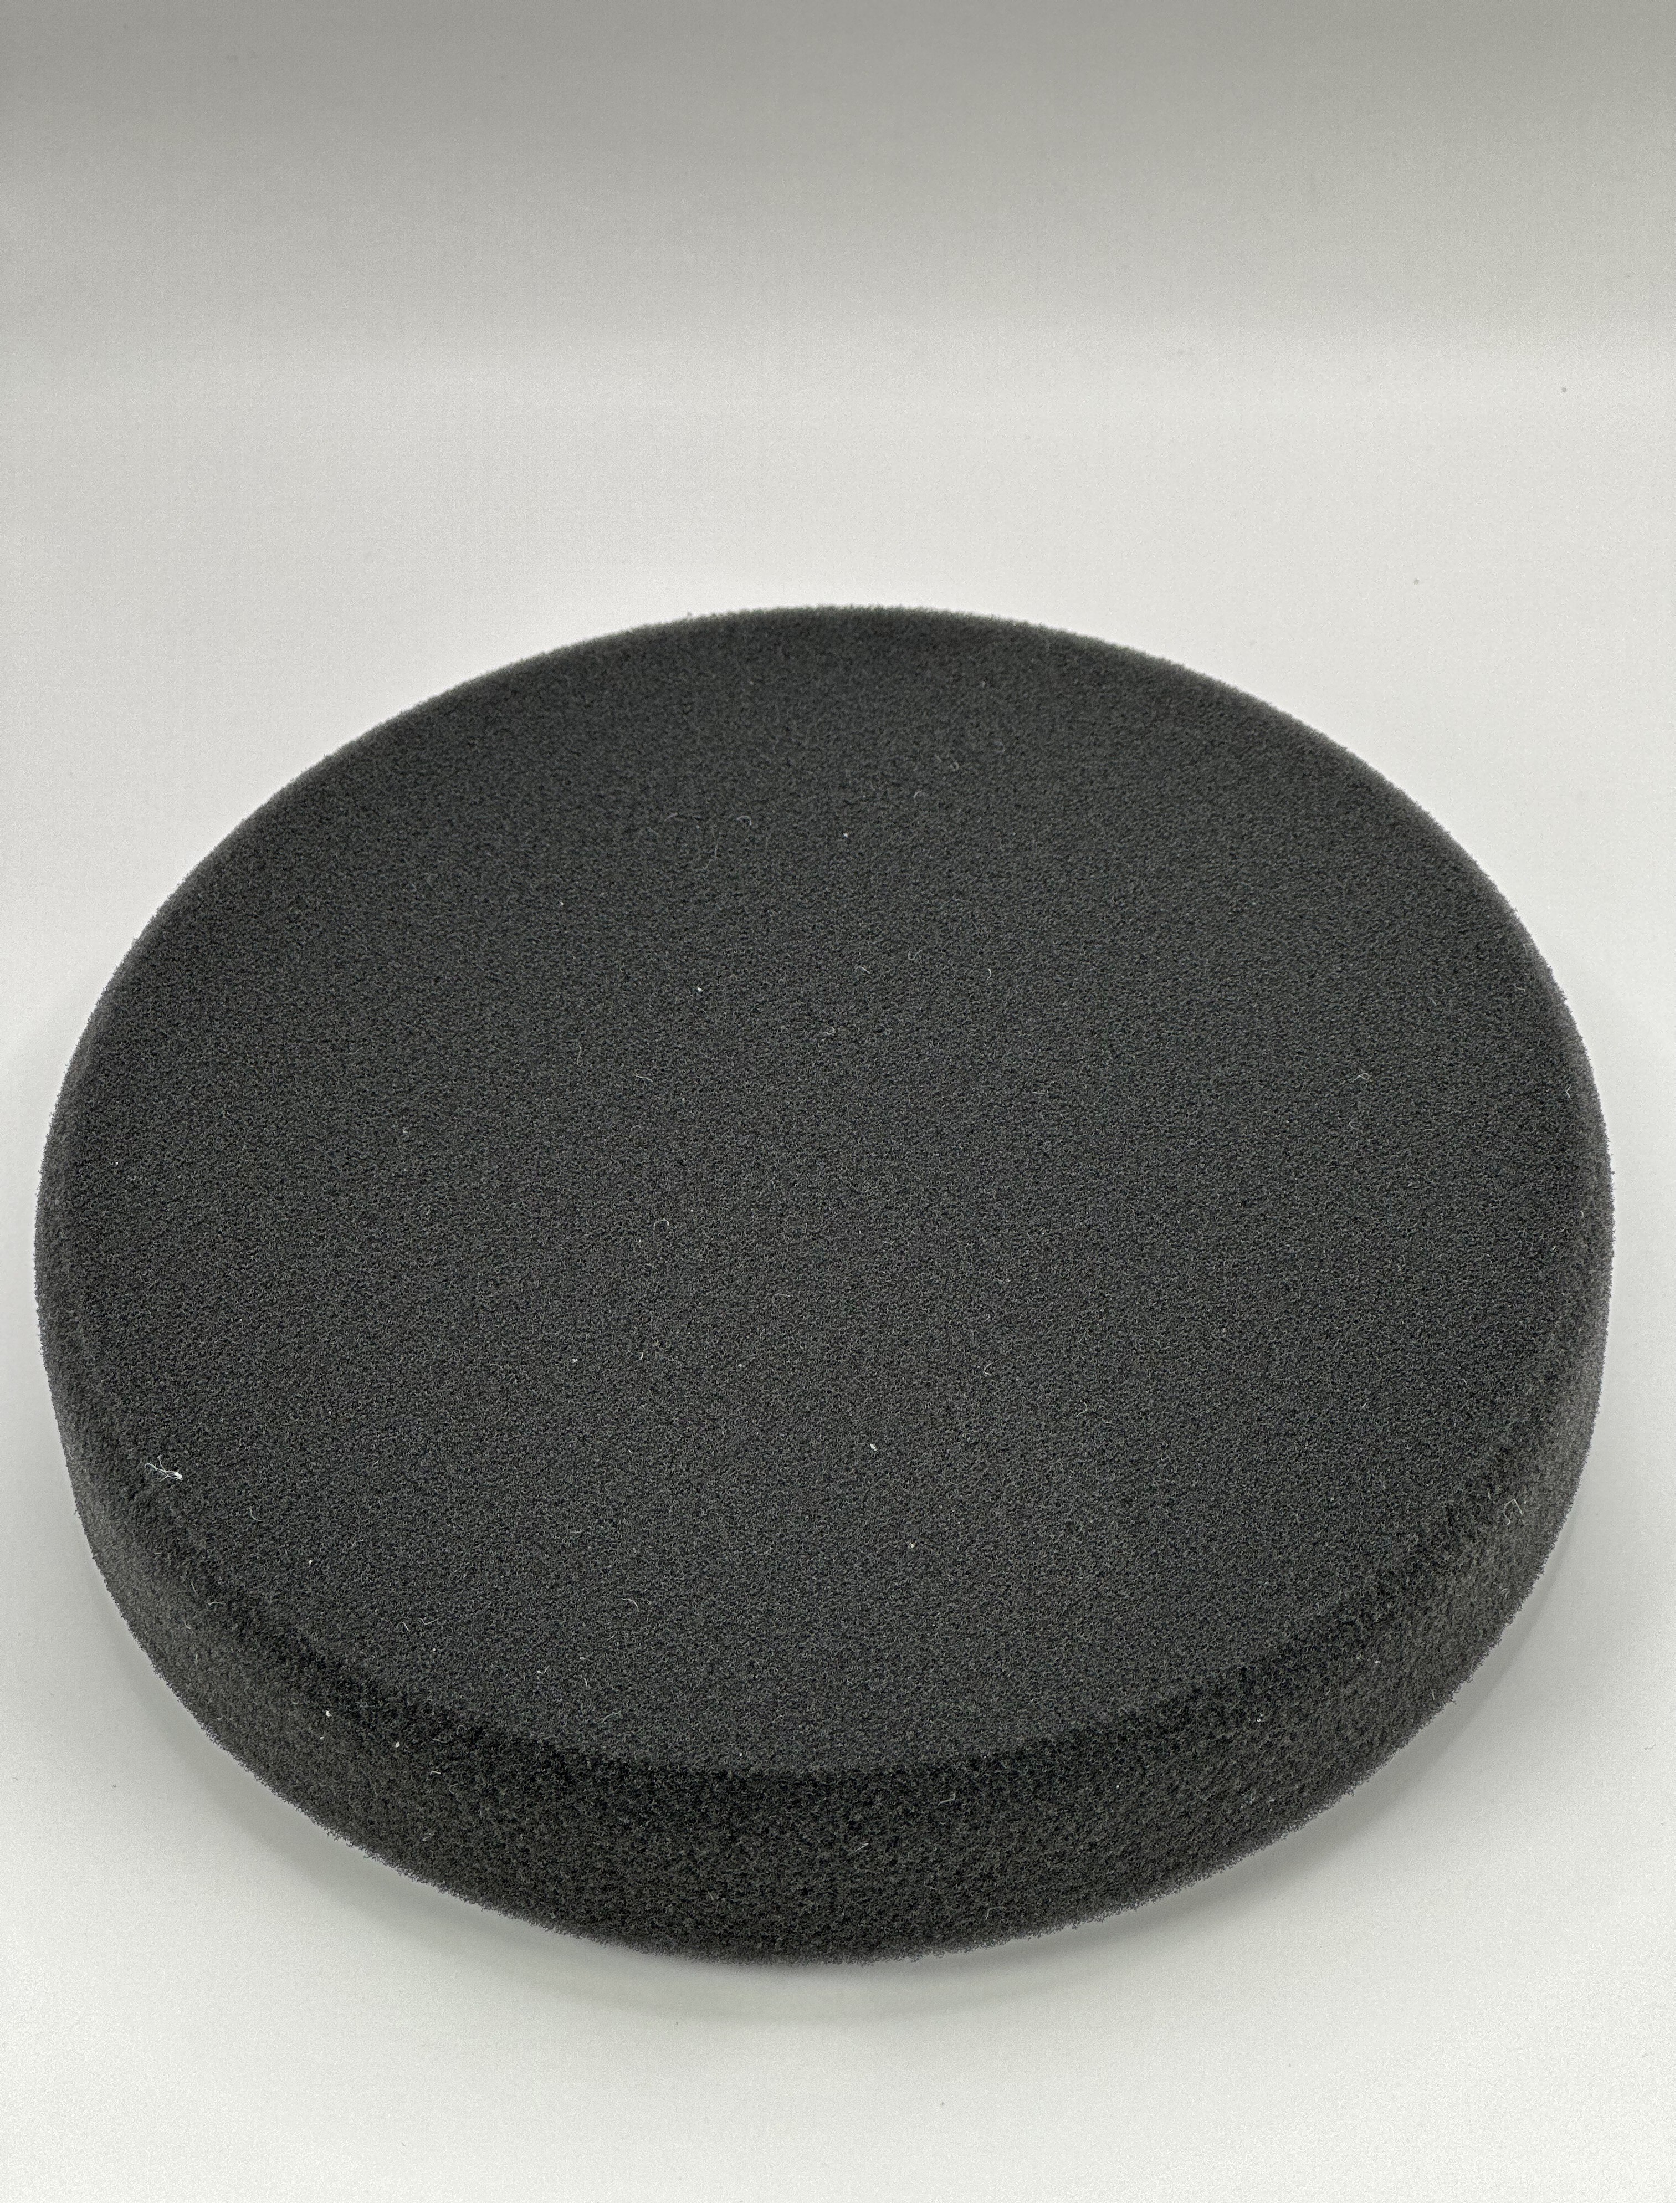 Диск Jeta Pro полировальный круг с гладкой поверхностью мягкий черный 150 х 25 мм